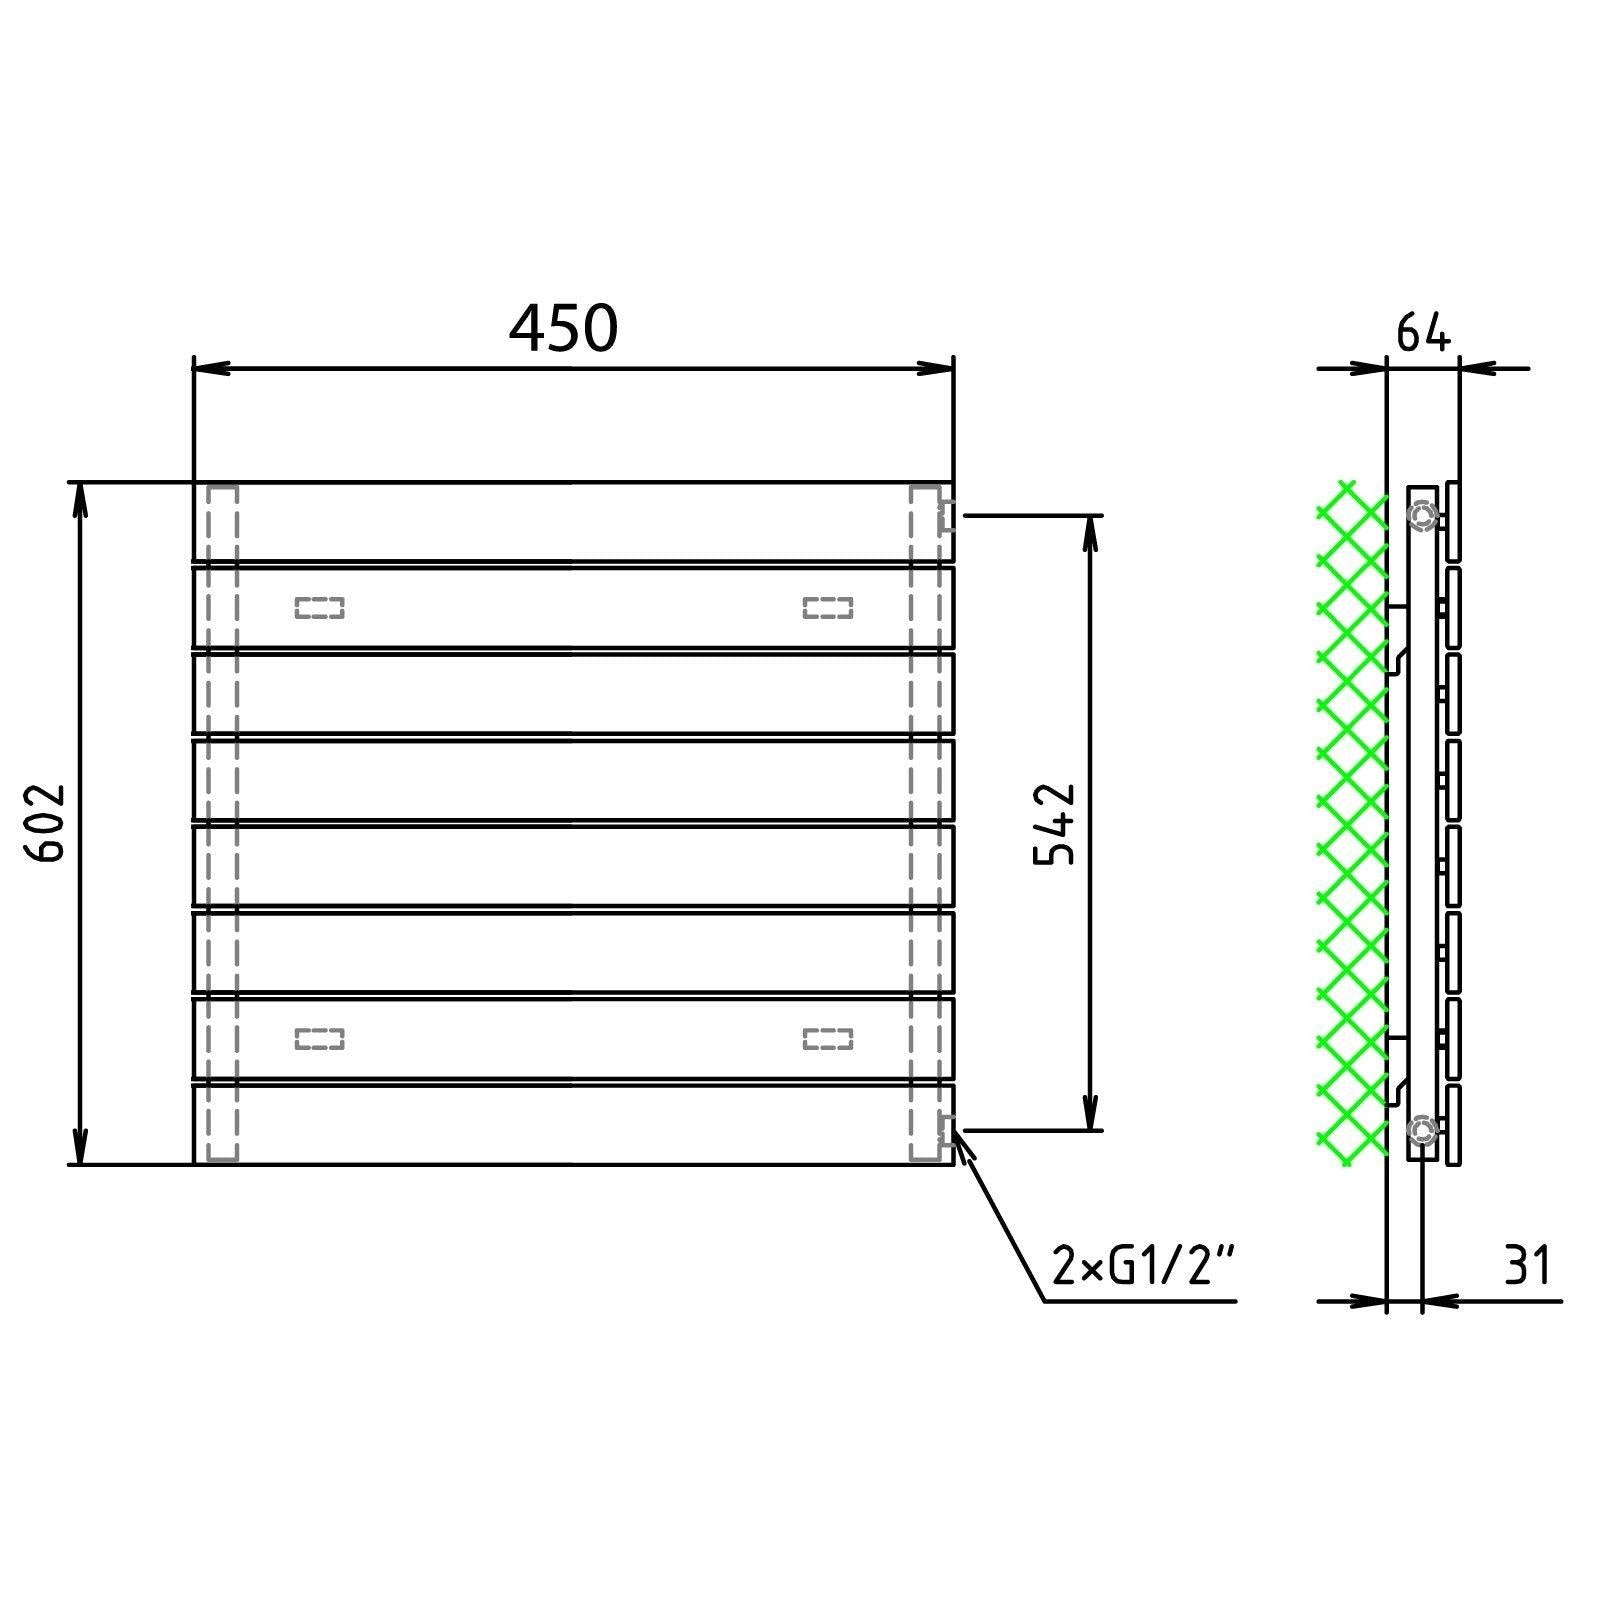 Flachheizkörper 602 x 450 horizontal mit seitlichem Anschluss Heizkörper Badheizkörper flach technische Zeichnung - heizkoerper.shop